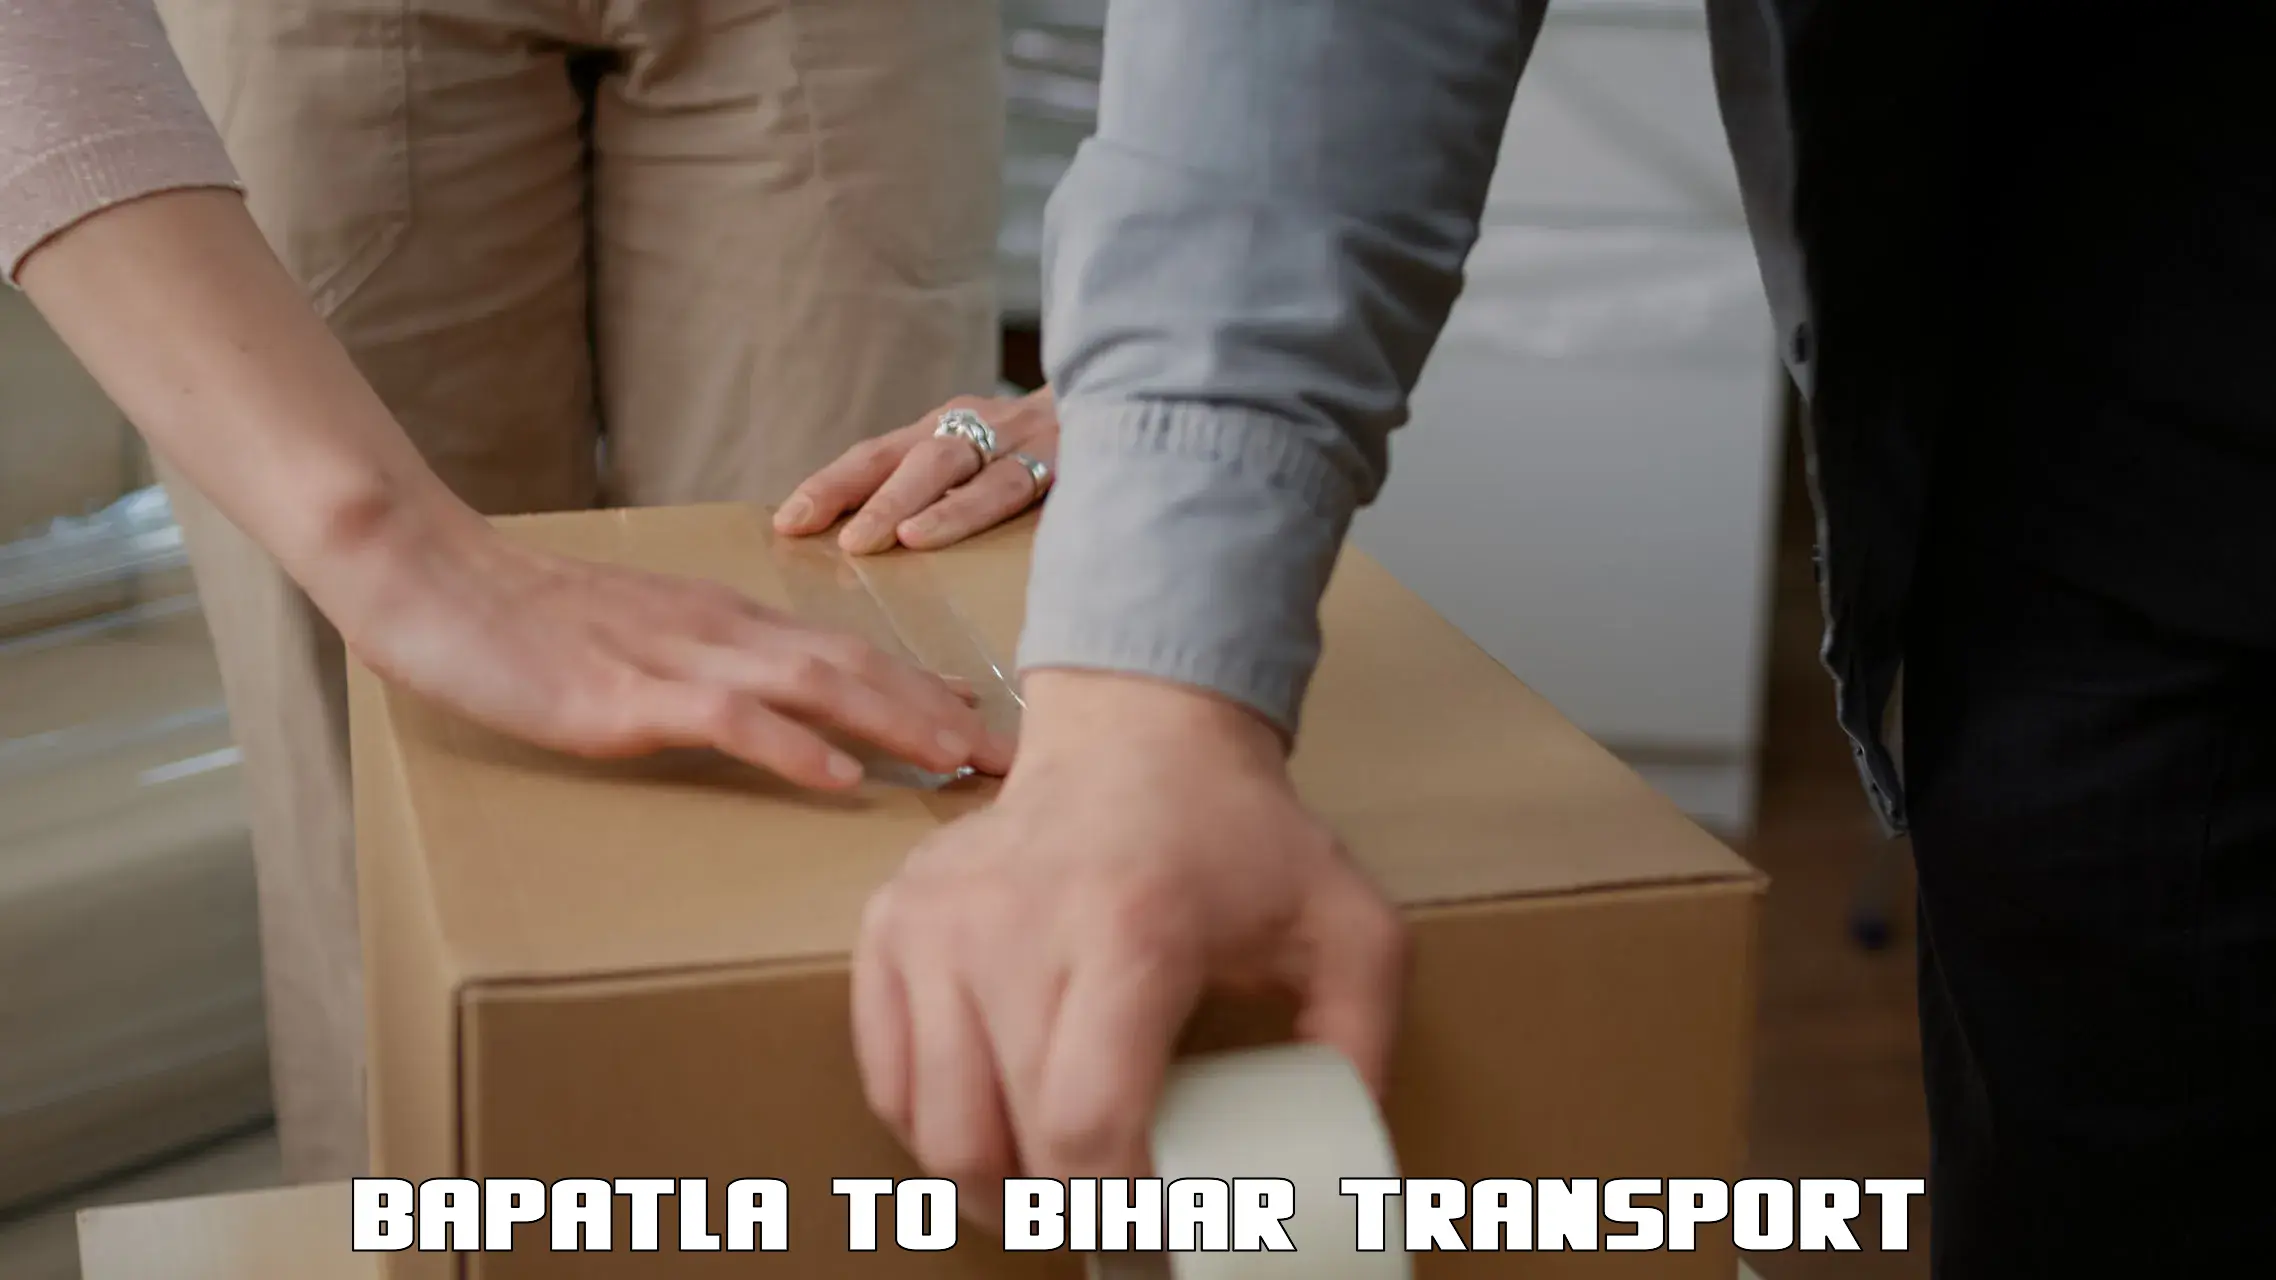 Pick up transport service Bapatla to Bagaha